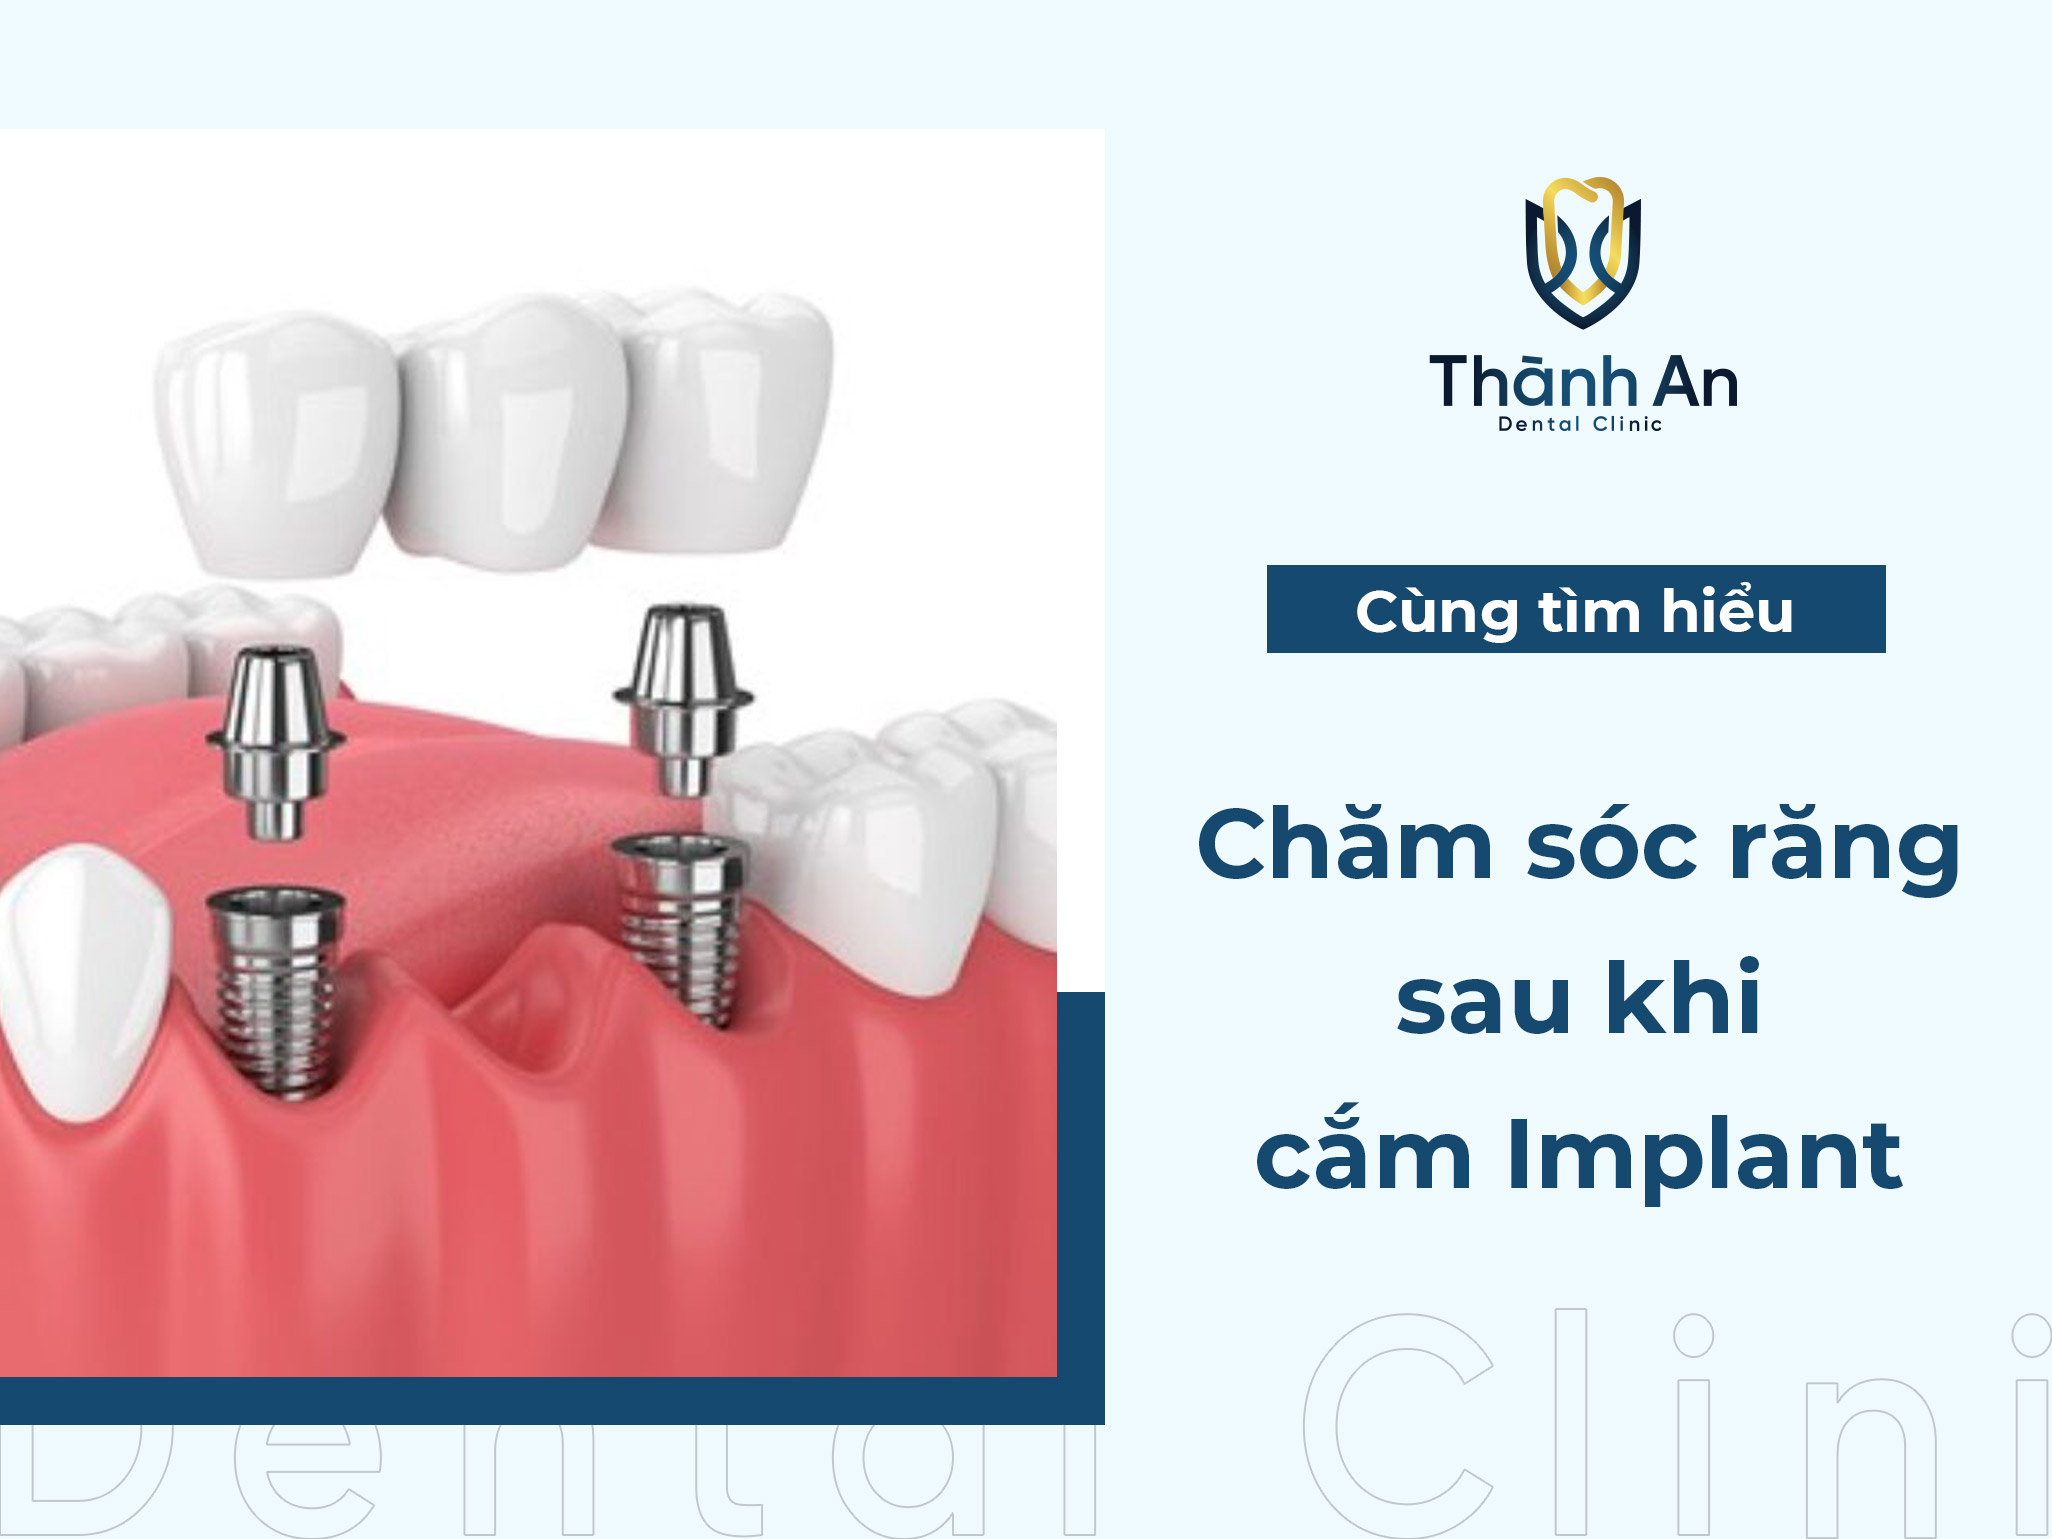 Cách chăm sóc răng sau khi cắm implant hiệu quả